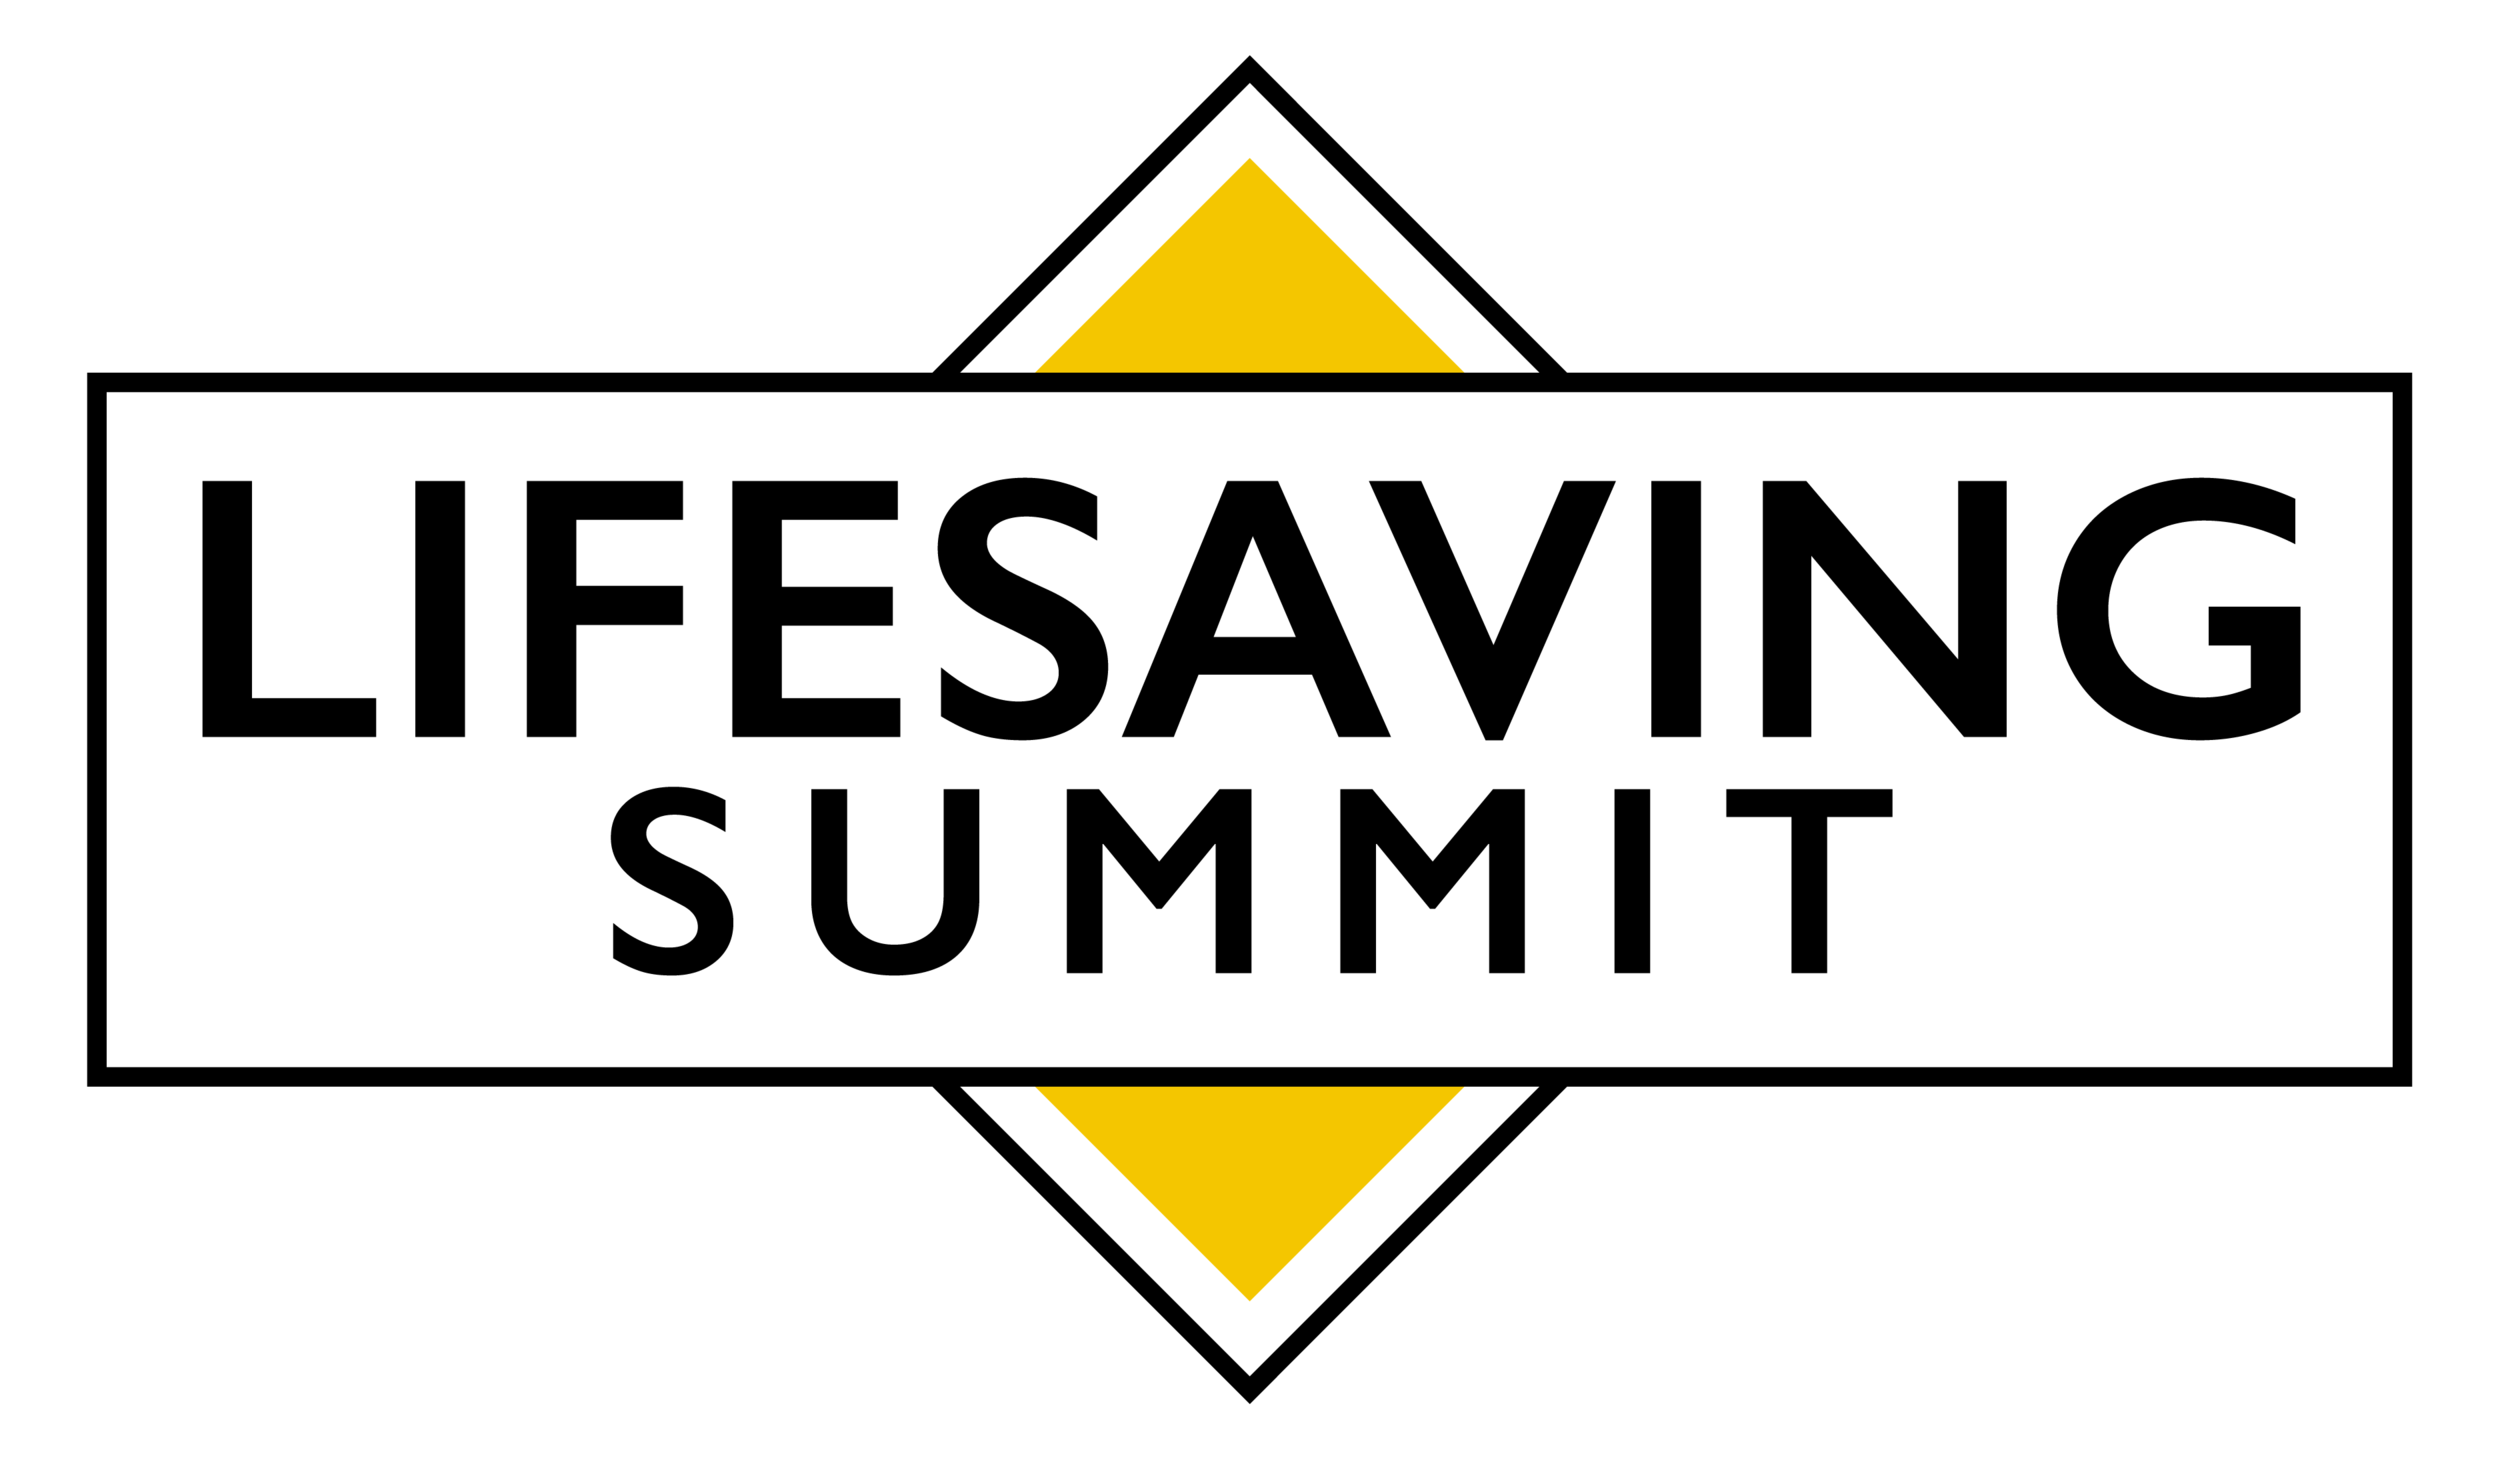 lifesaving summit logo.png